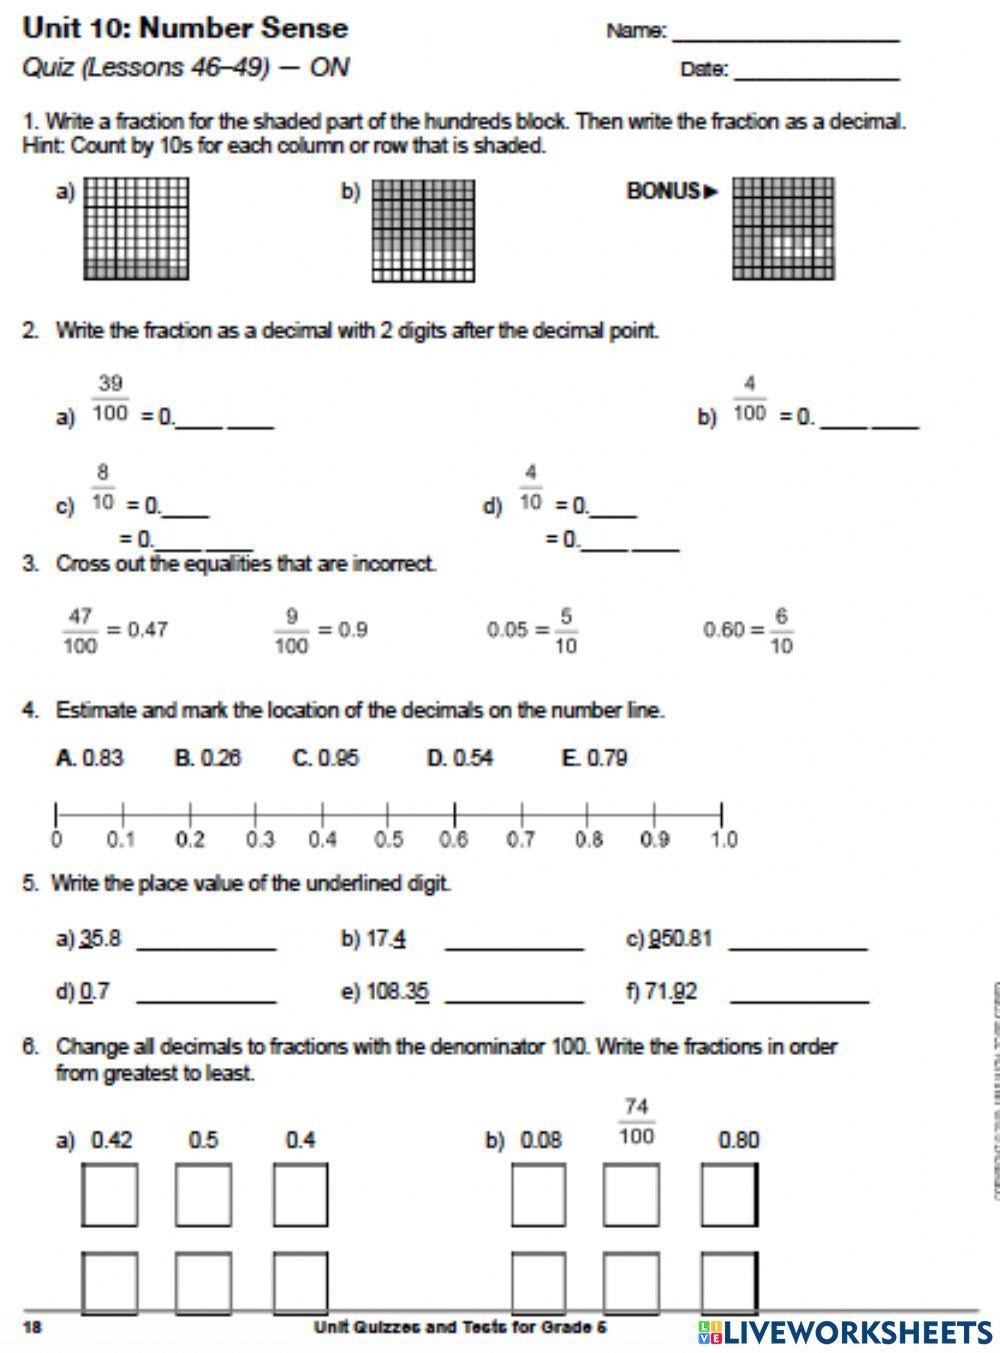 Decimals and fractions quiz